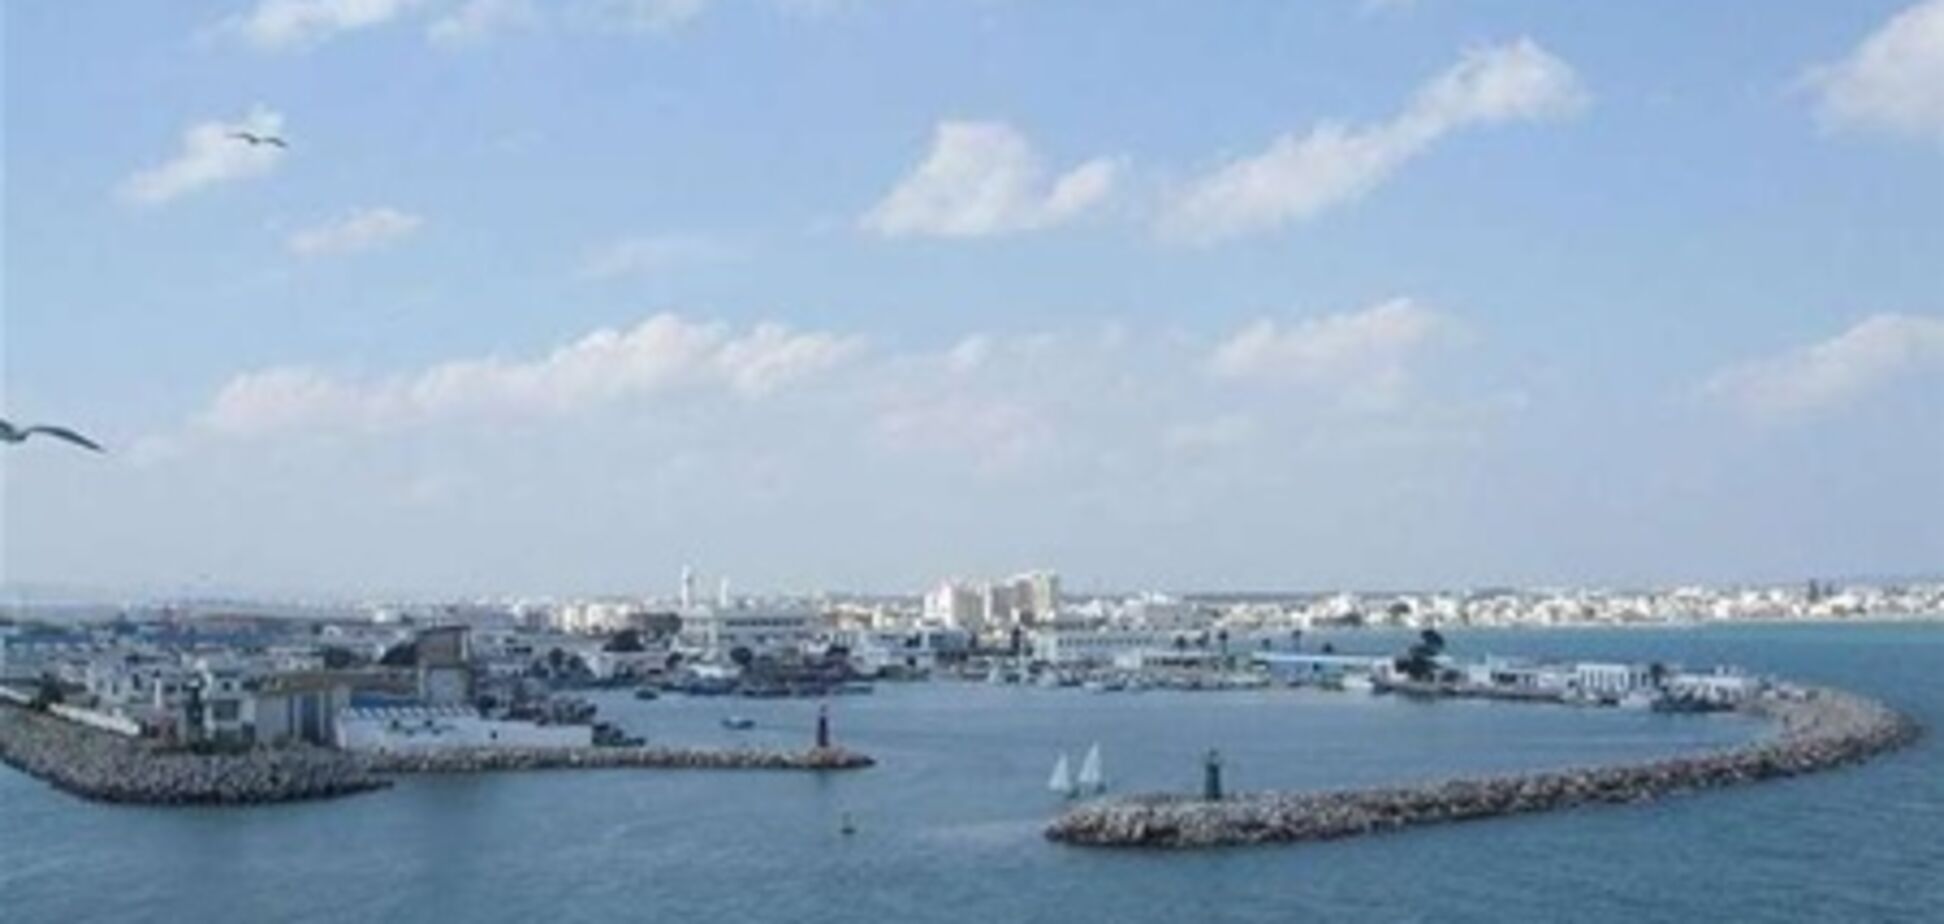 Американские круизные лайнеры игнорируют Тунис